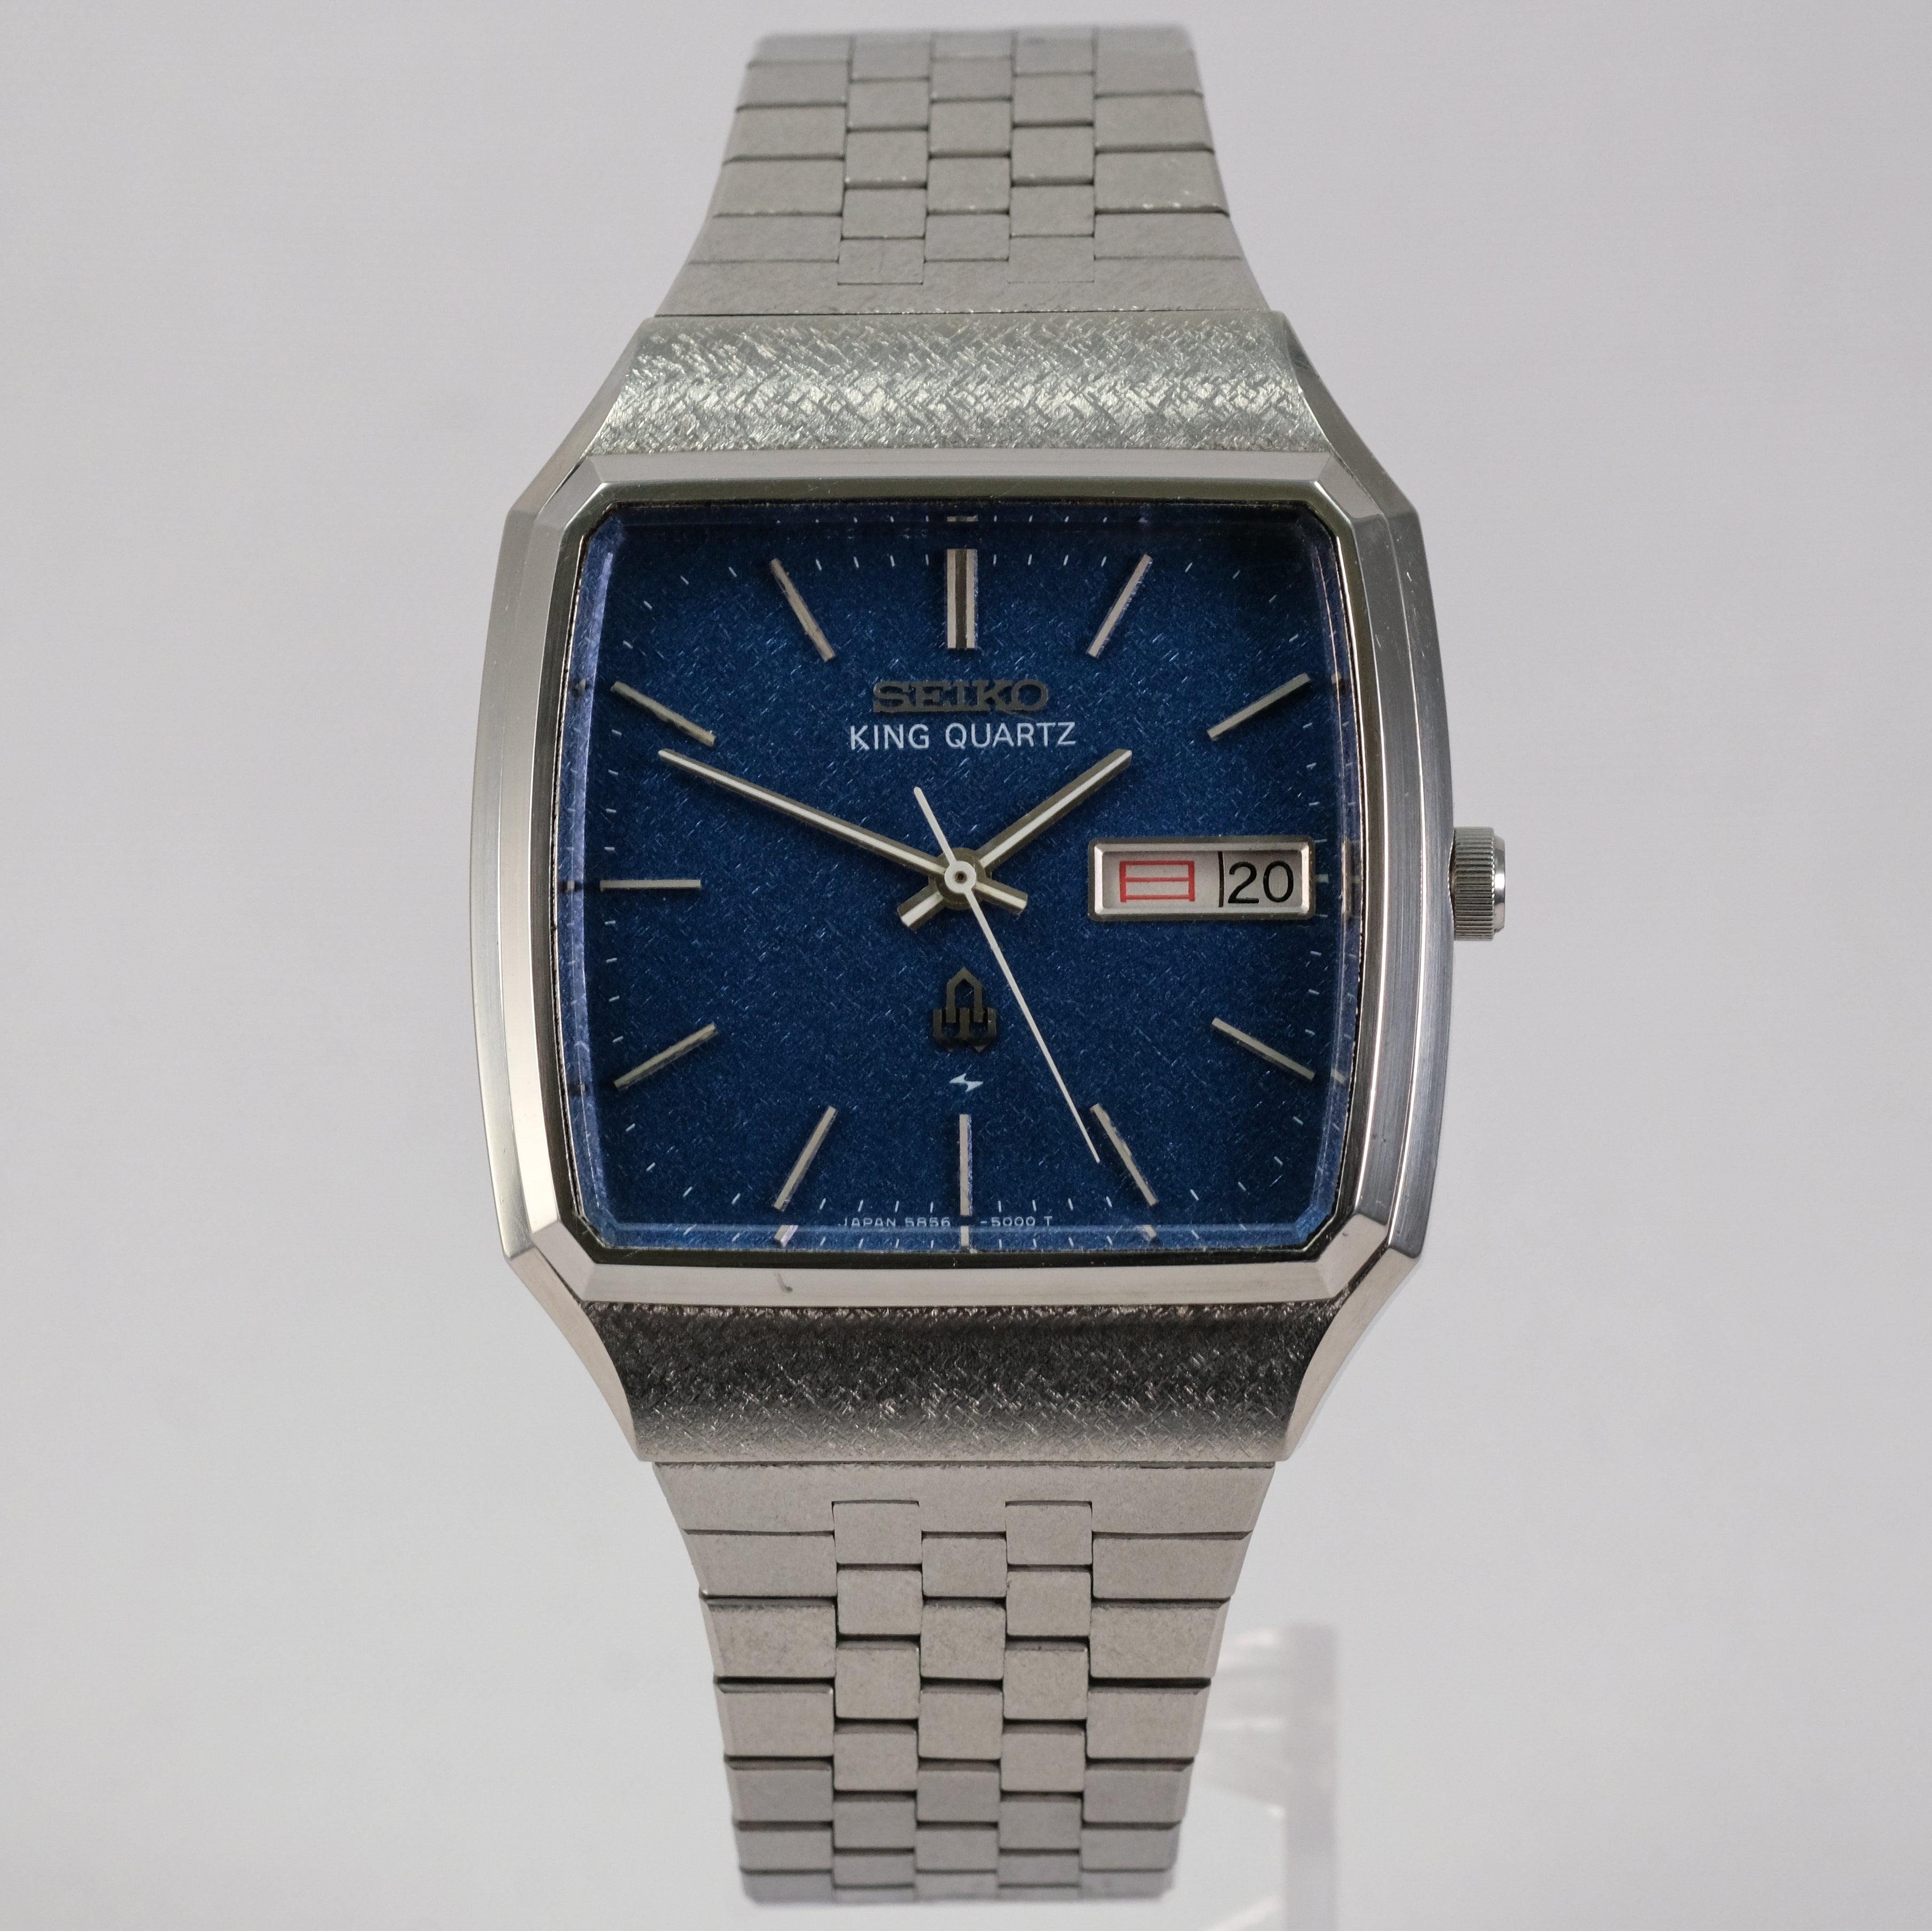 Vintage Seiko Quartz Watches – Page 4 – TokeiMedic